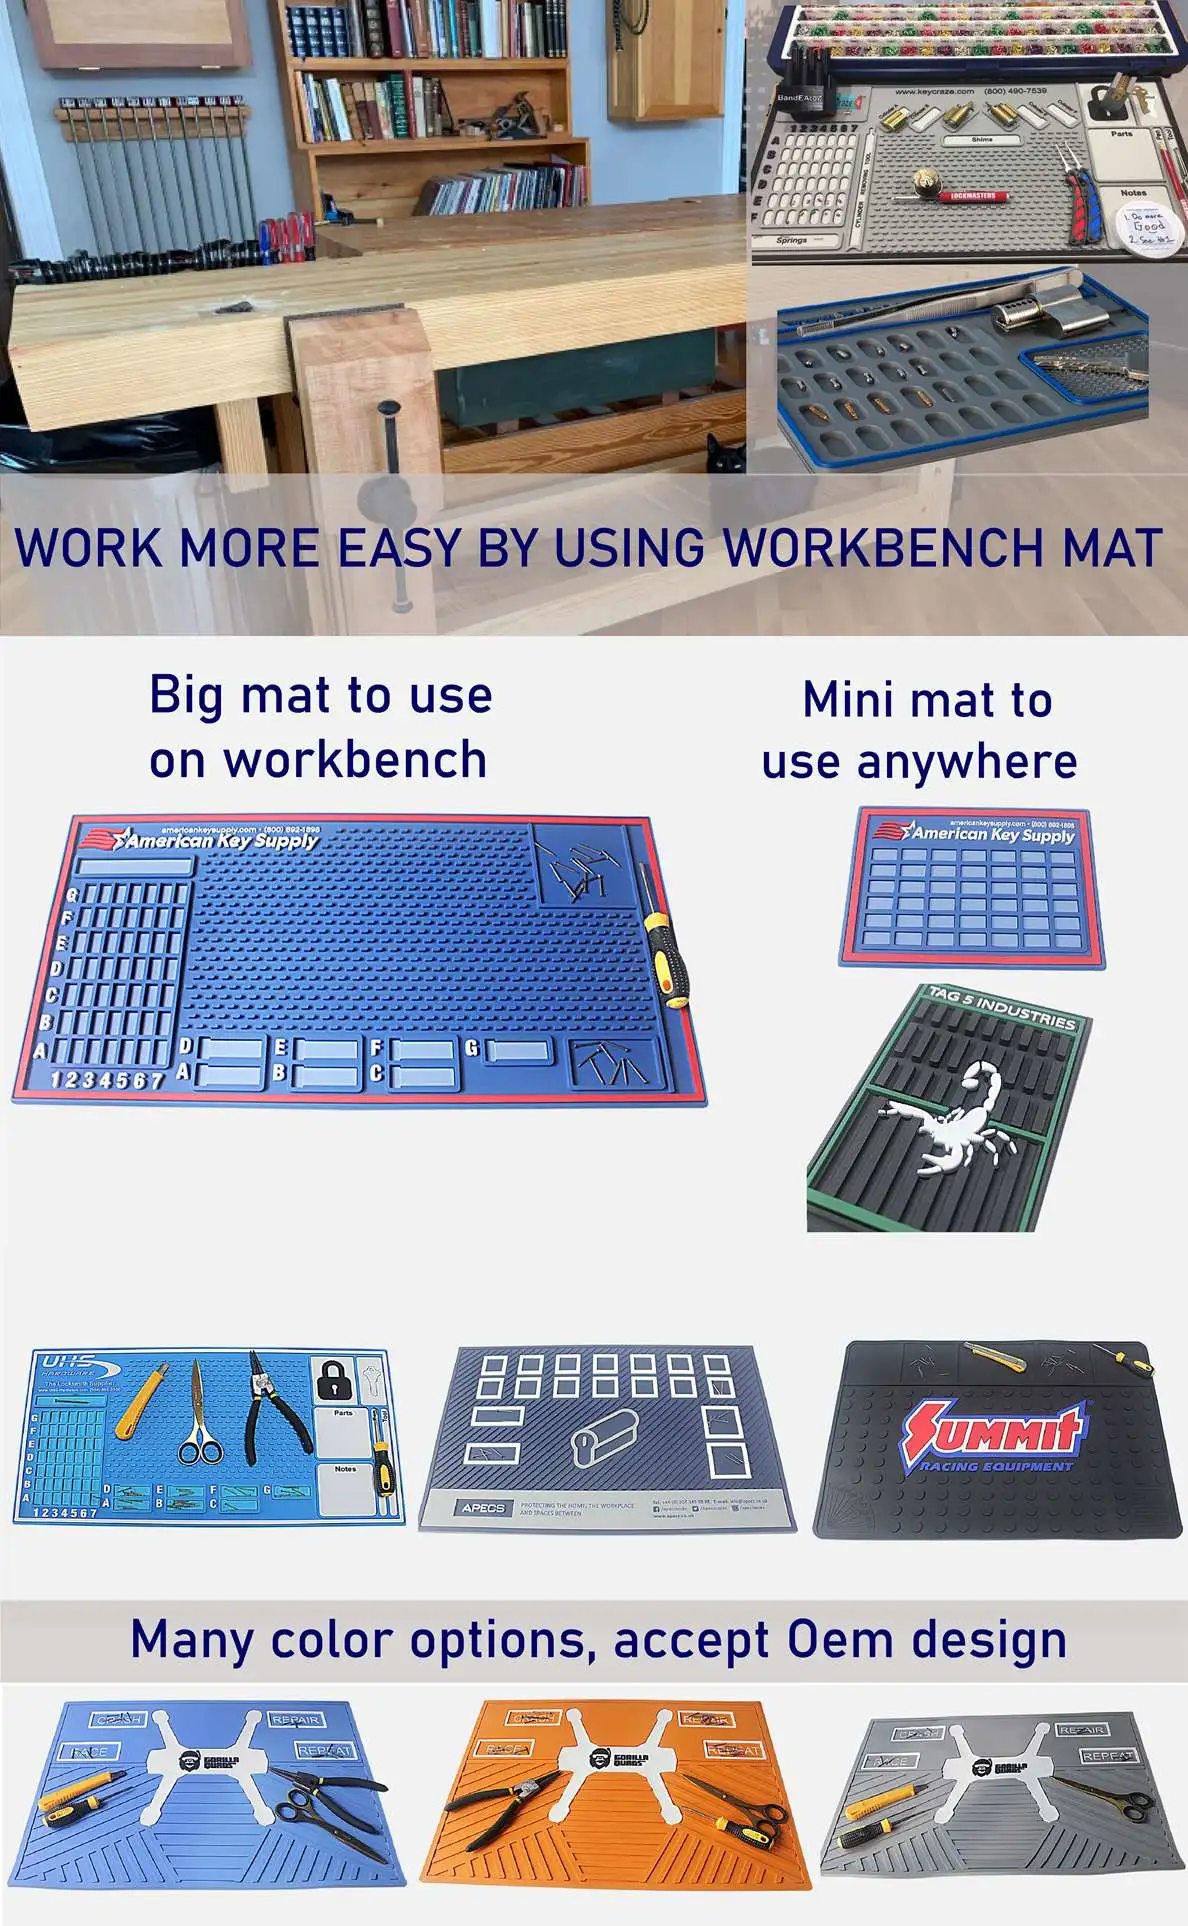 workbench pinning mat manufacturer